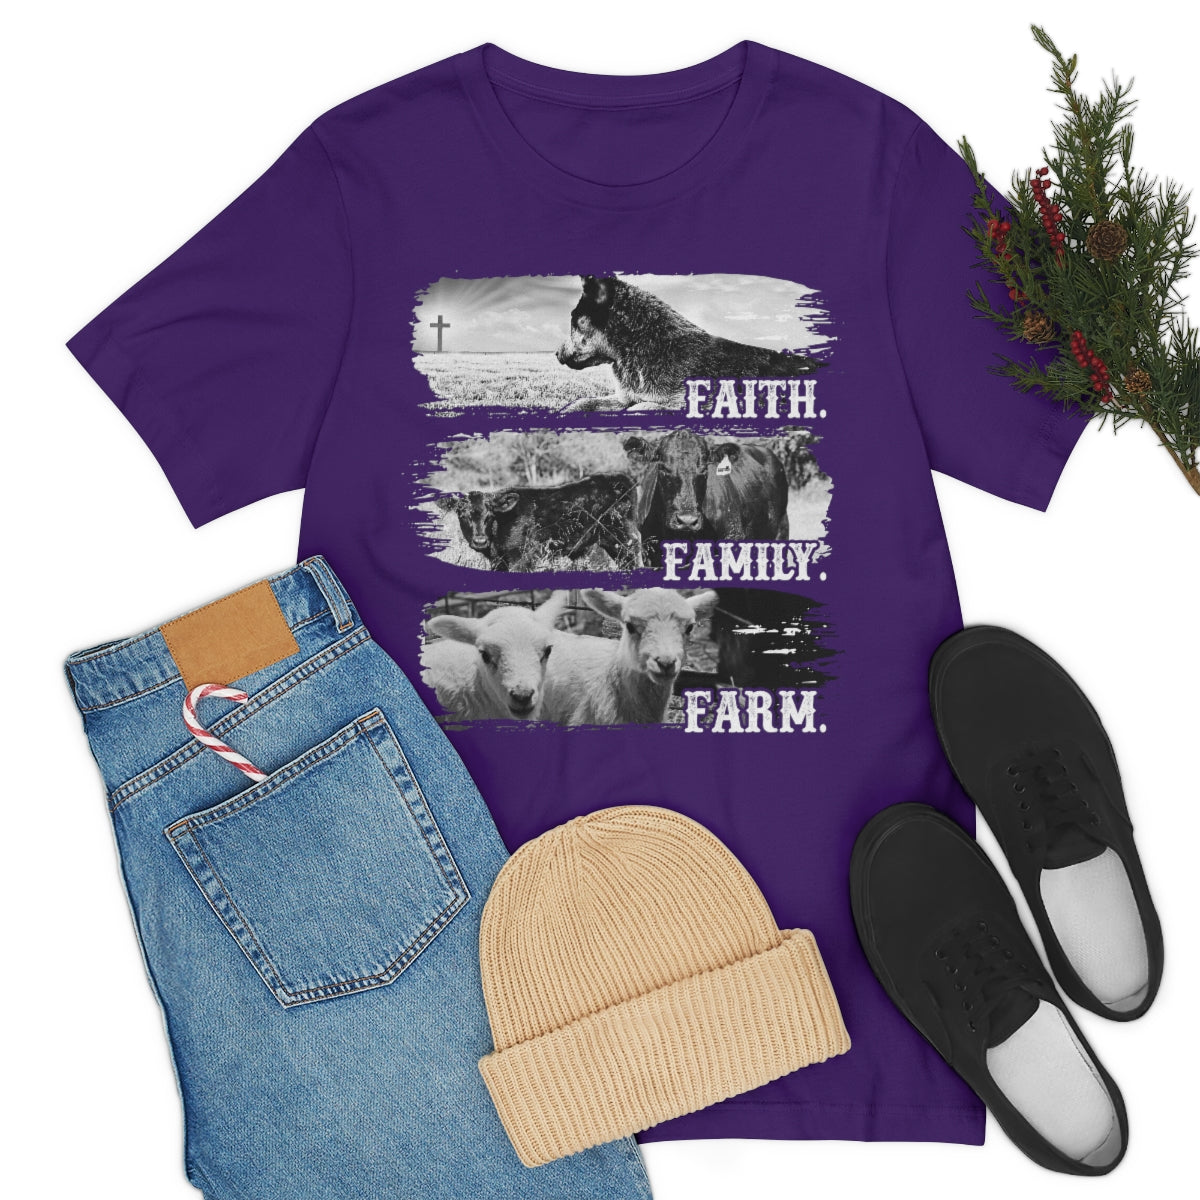 Faith. Family. Farm. w/ Lambs